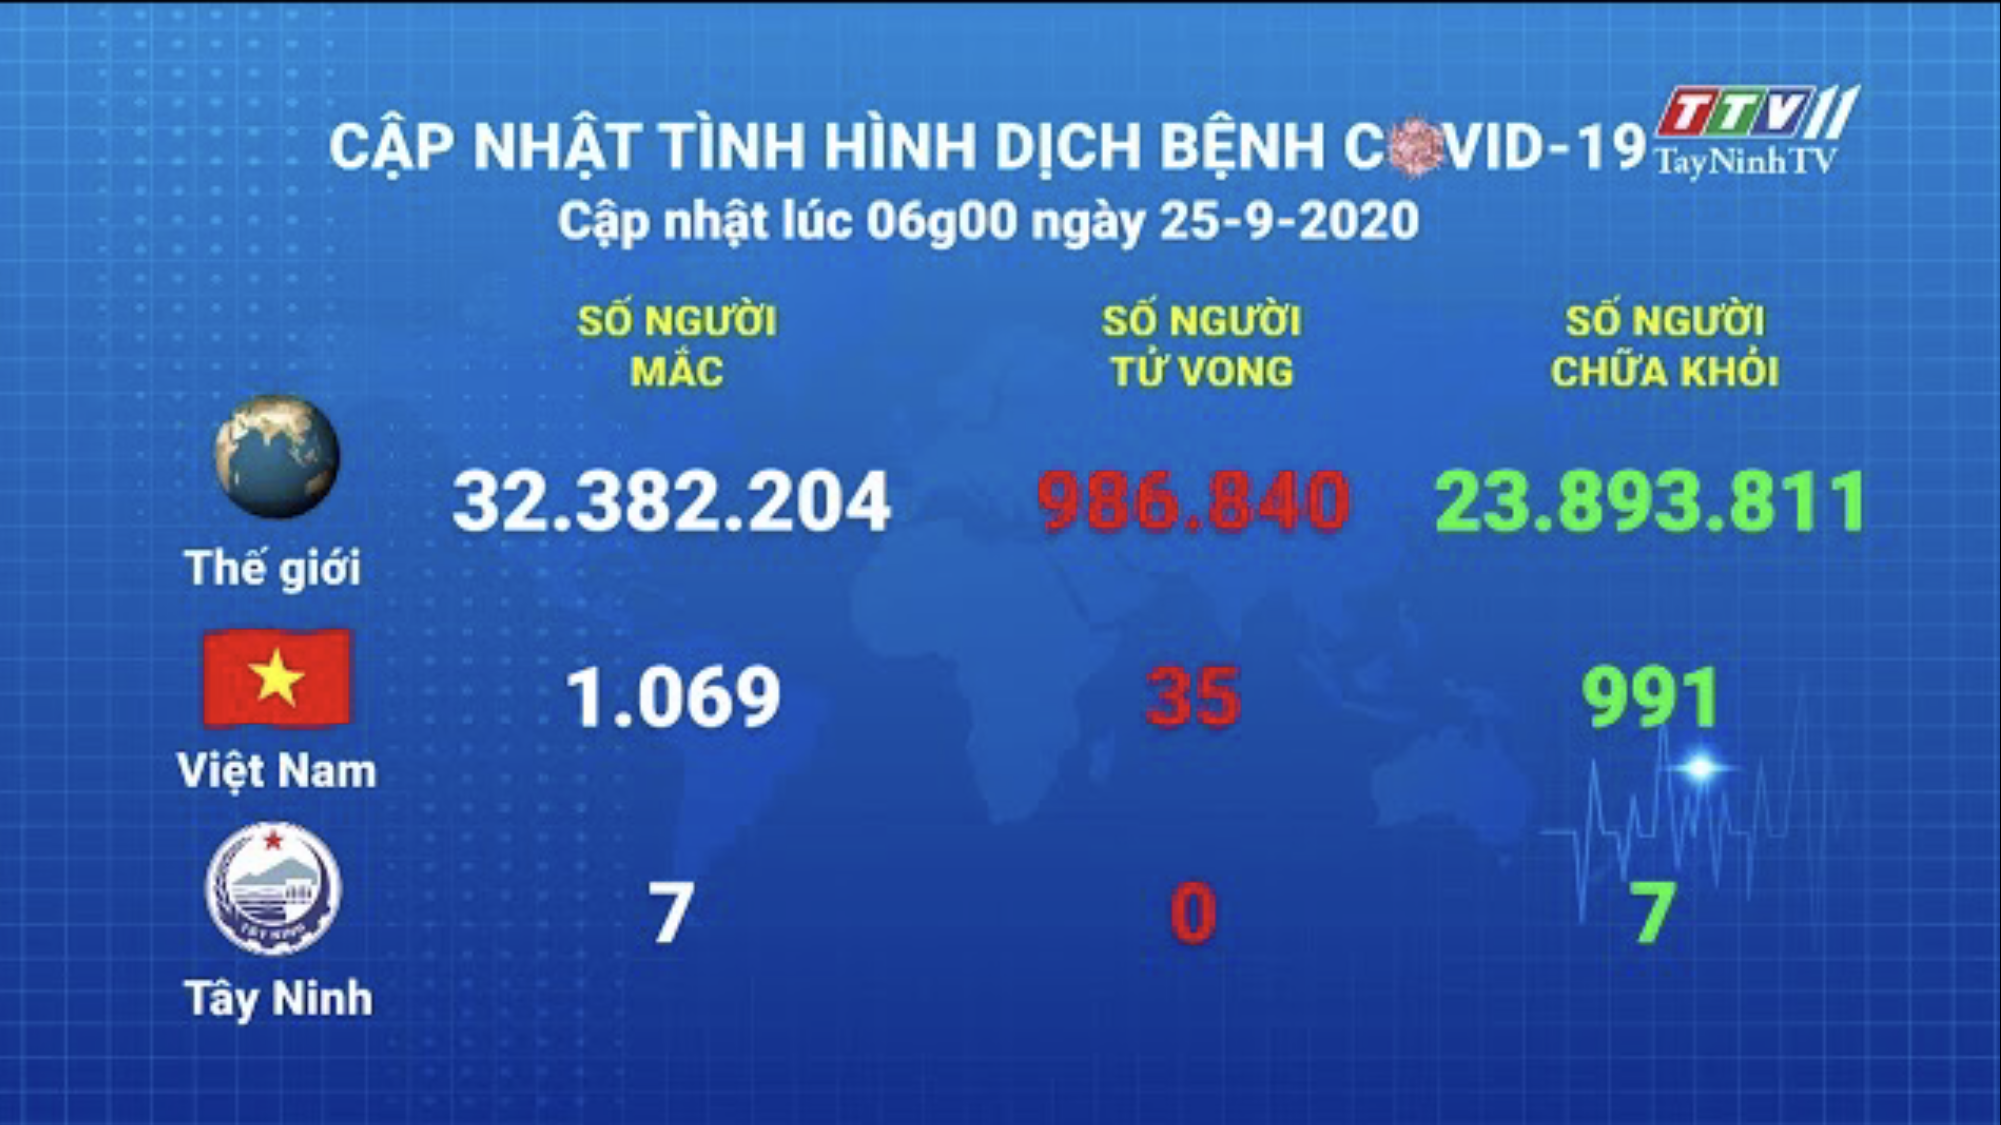 Cập nhật tình hình Covid-19 vào lúc 06 giờ 25-9-2020 | Thông tin dịch Covid-19 | TayNinhTV